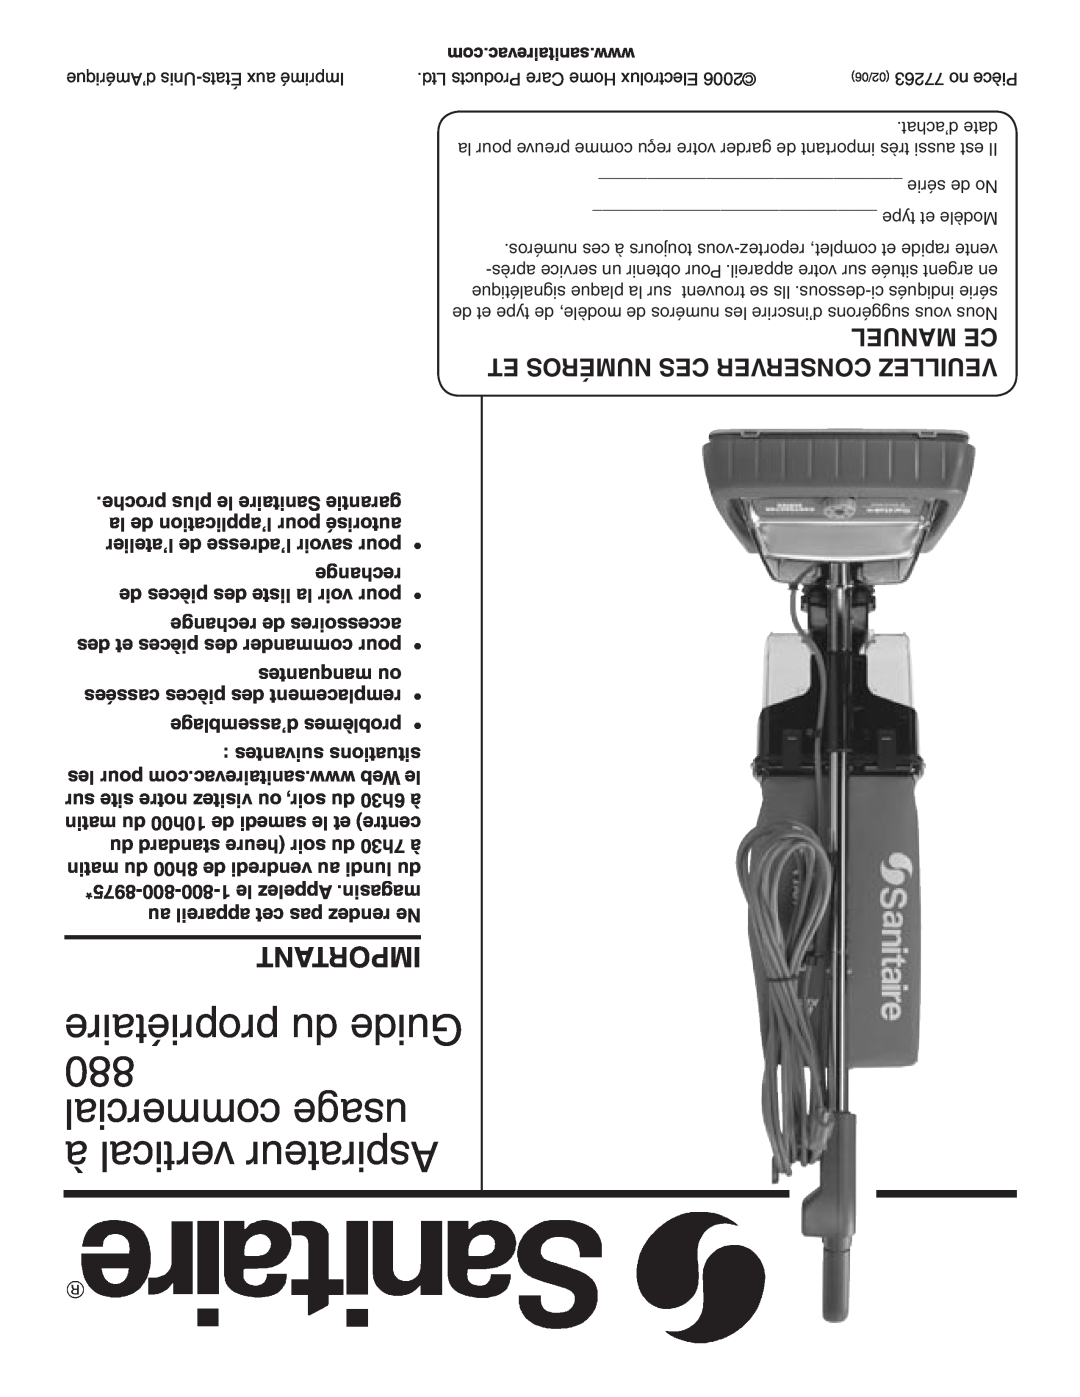 Sanitaire warranty propriétaire du Guide 880 commercial usage à vertical Aspirateur, Manuel Ce 